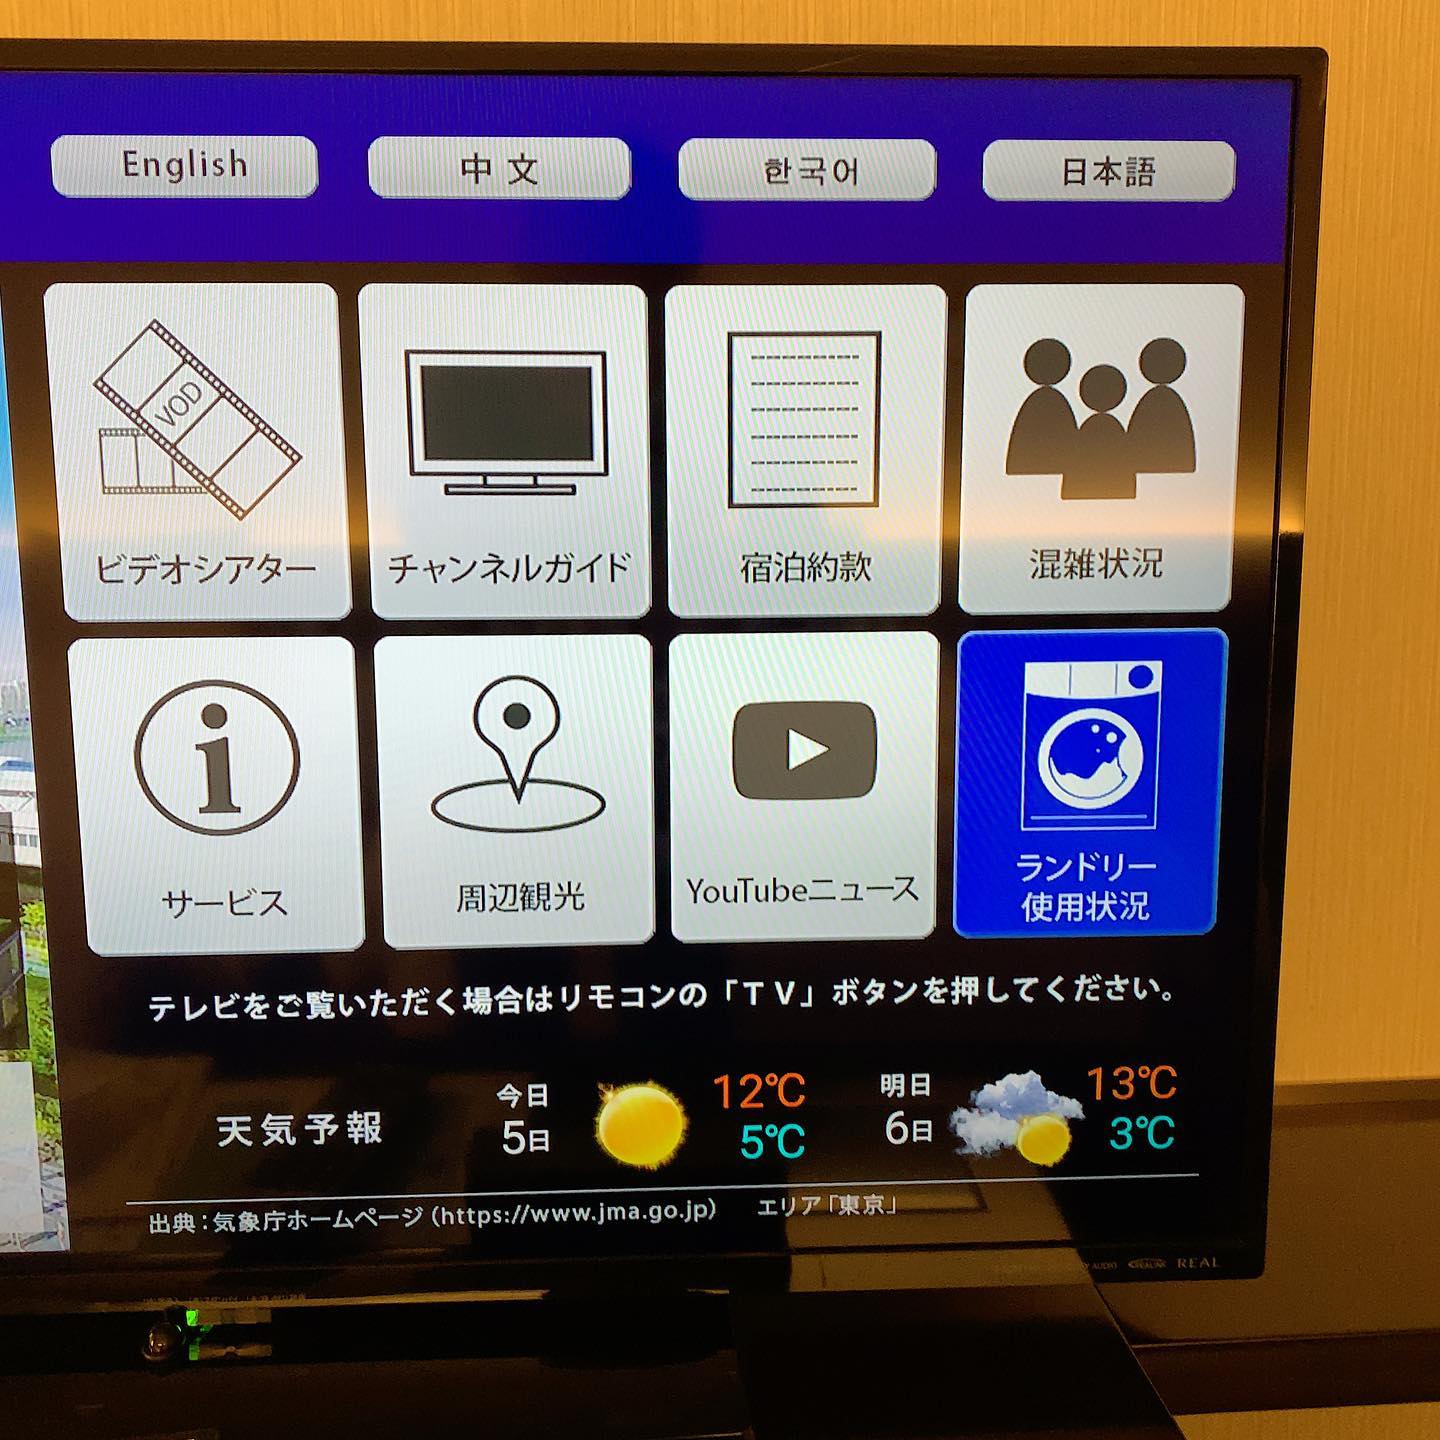 このホテルでは部屋のテレビからコインランドリーの混み具合がわかる。